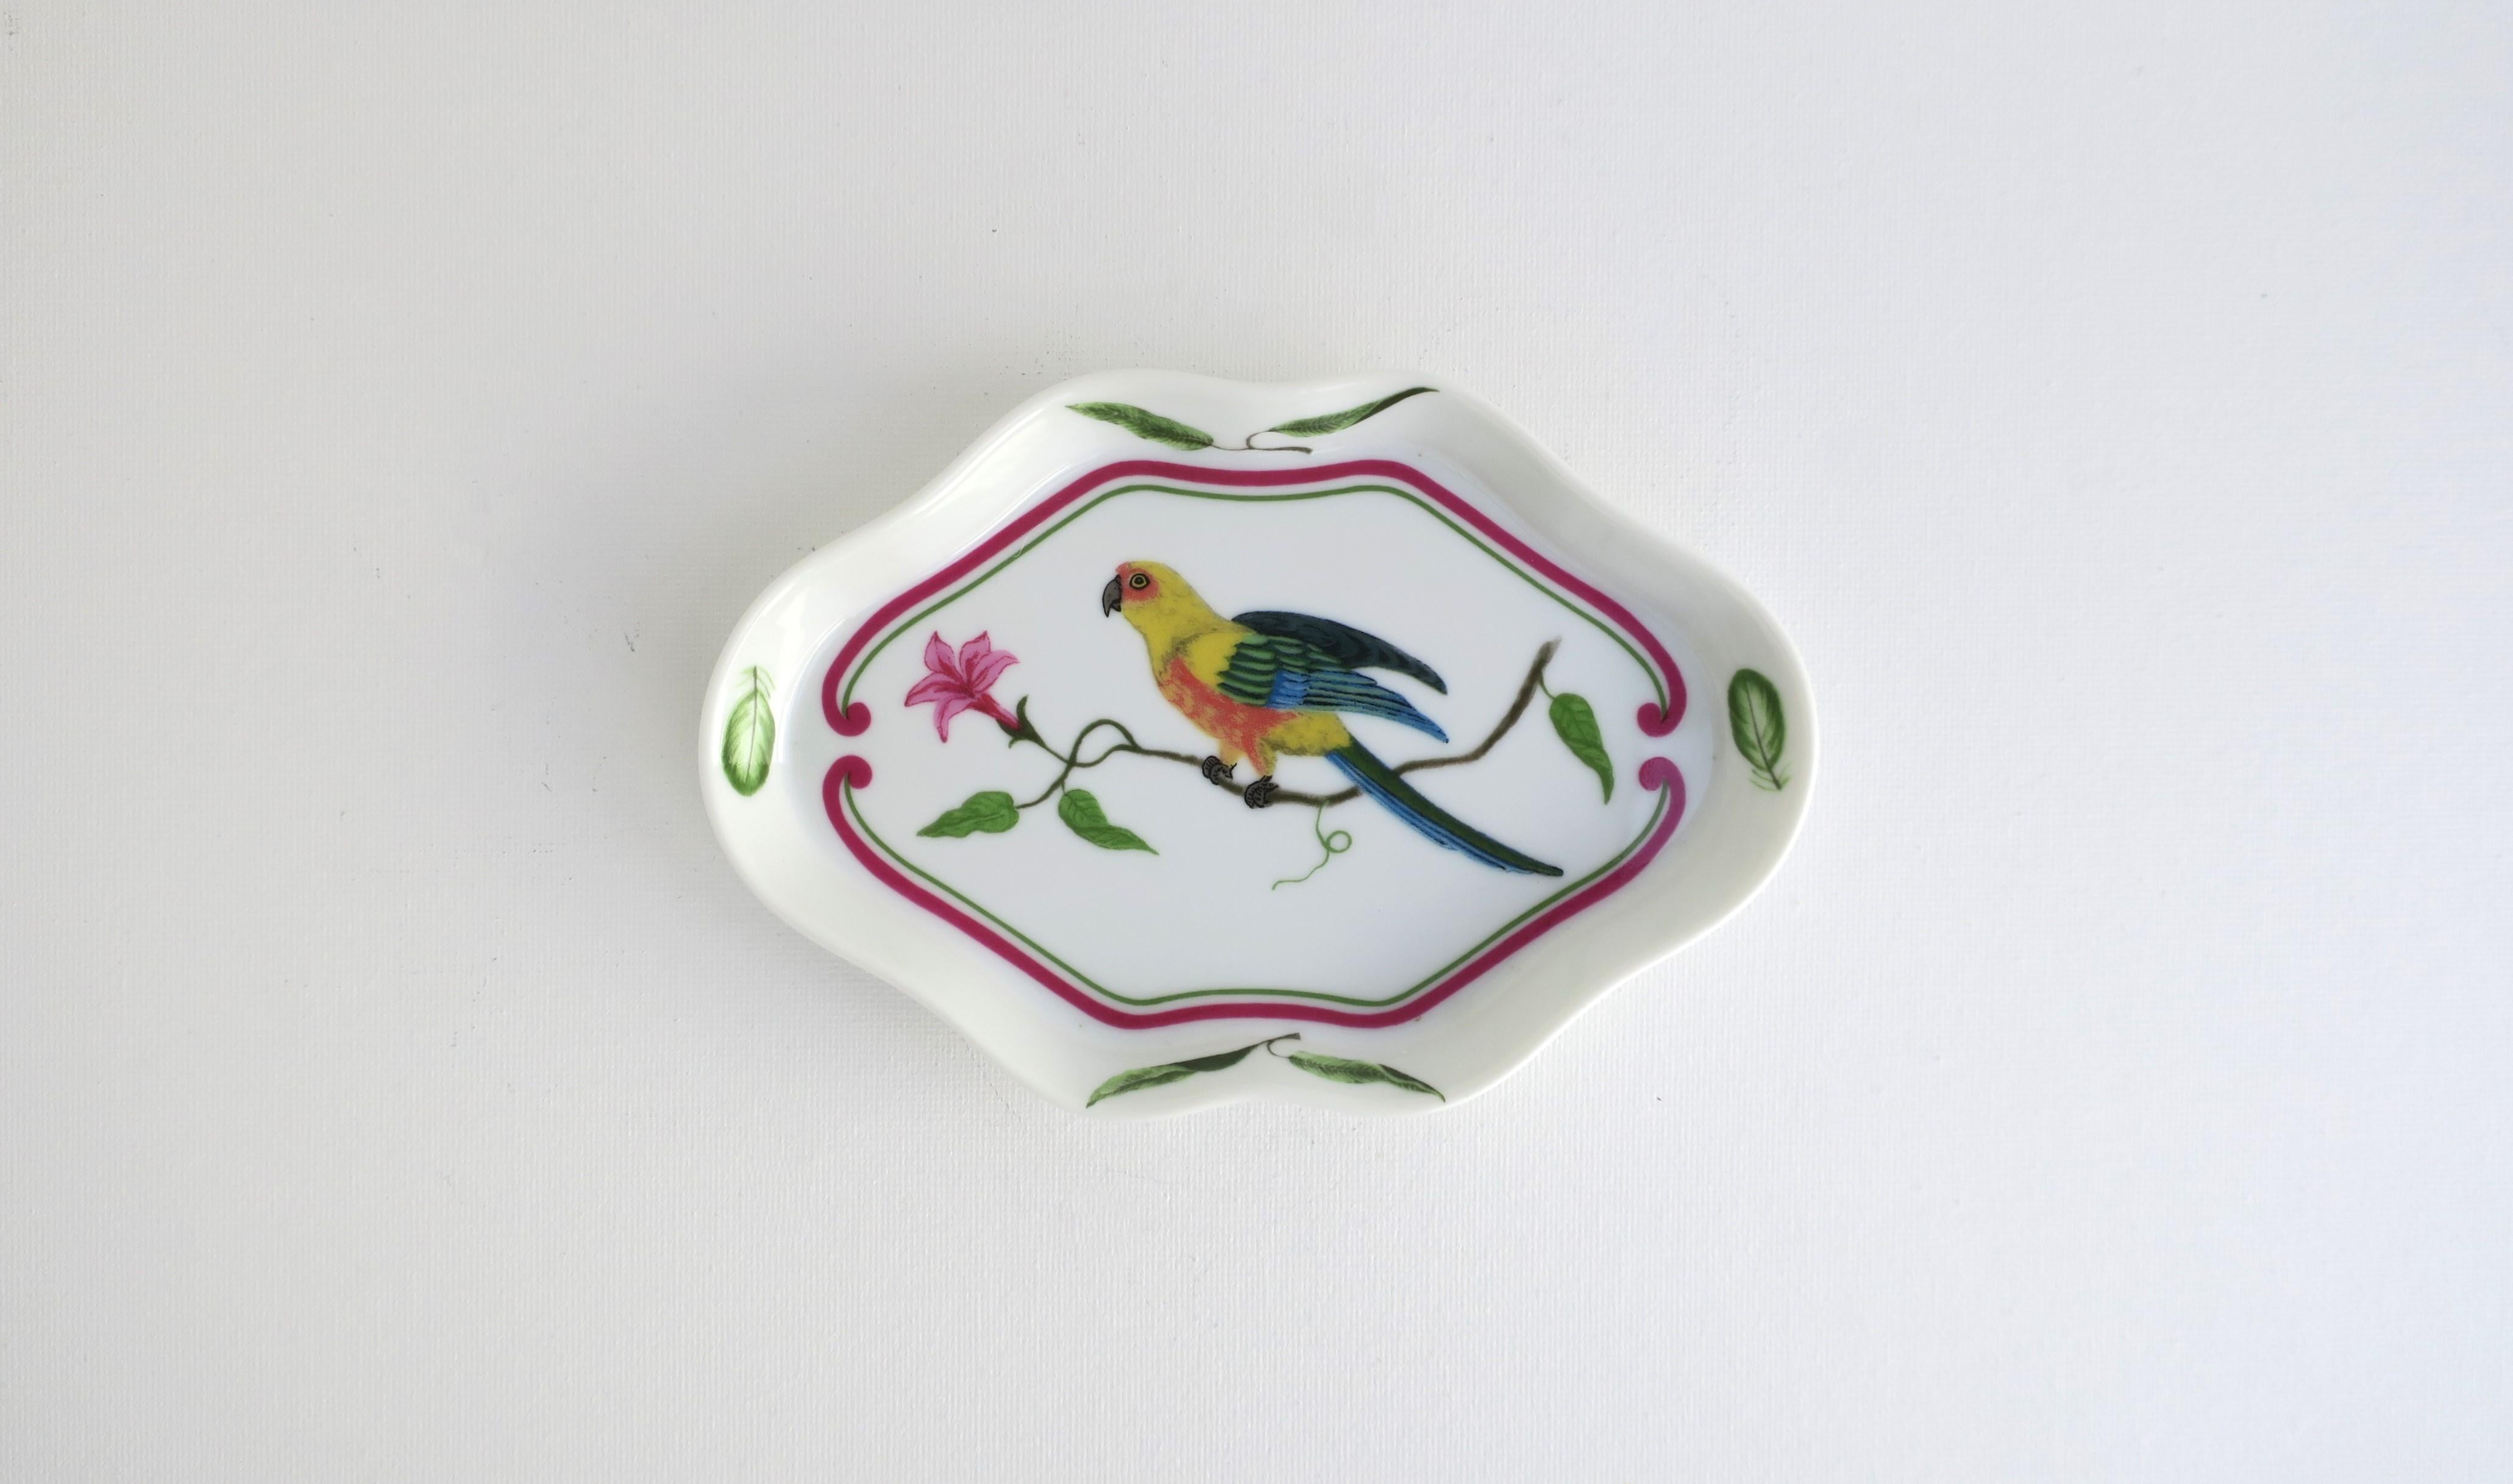 Très beau plat à bijoux en porcelaine avec un motif d'oiseau perroquet tropical, vers les années 1980, États-Unis. La pièce a été fabriquée en 1989, comme indiqué. Le plat est oblong avec un bord festonné, un bel oiseau perroquet au centre, assis